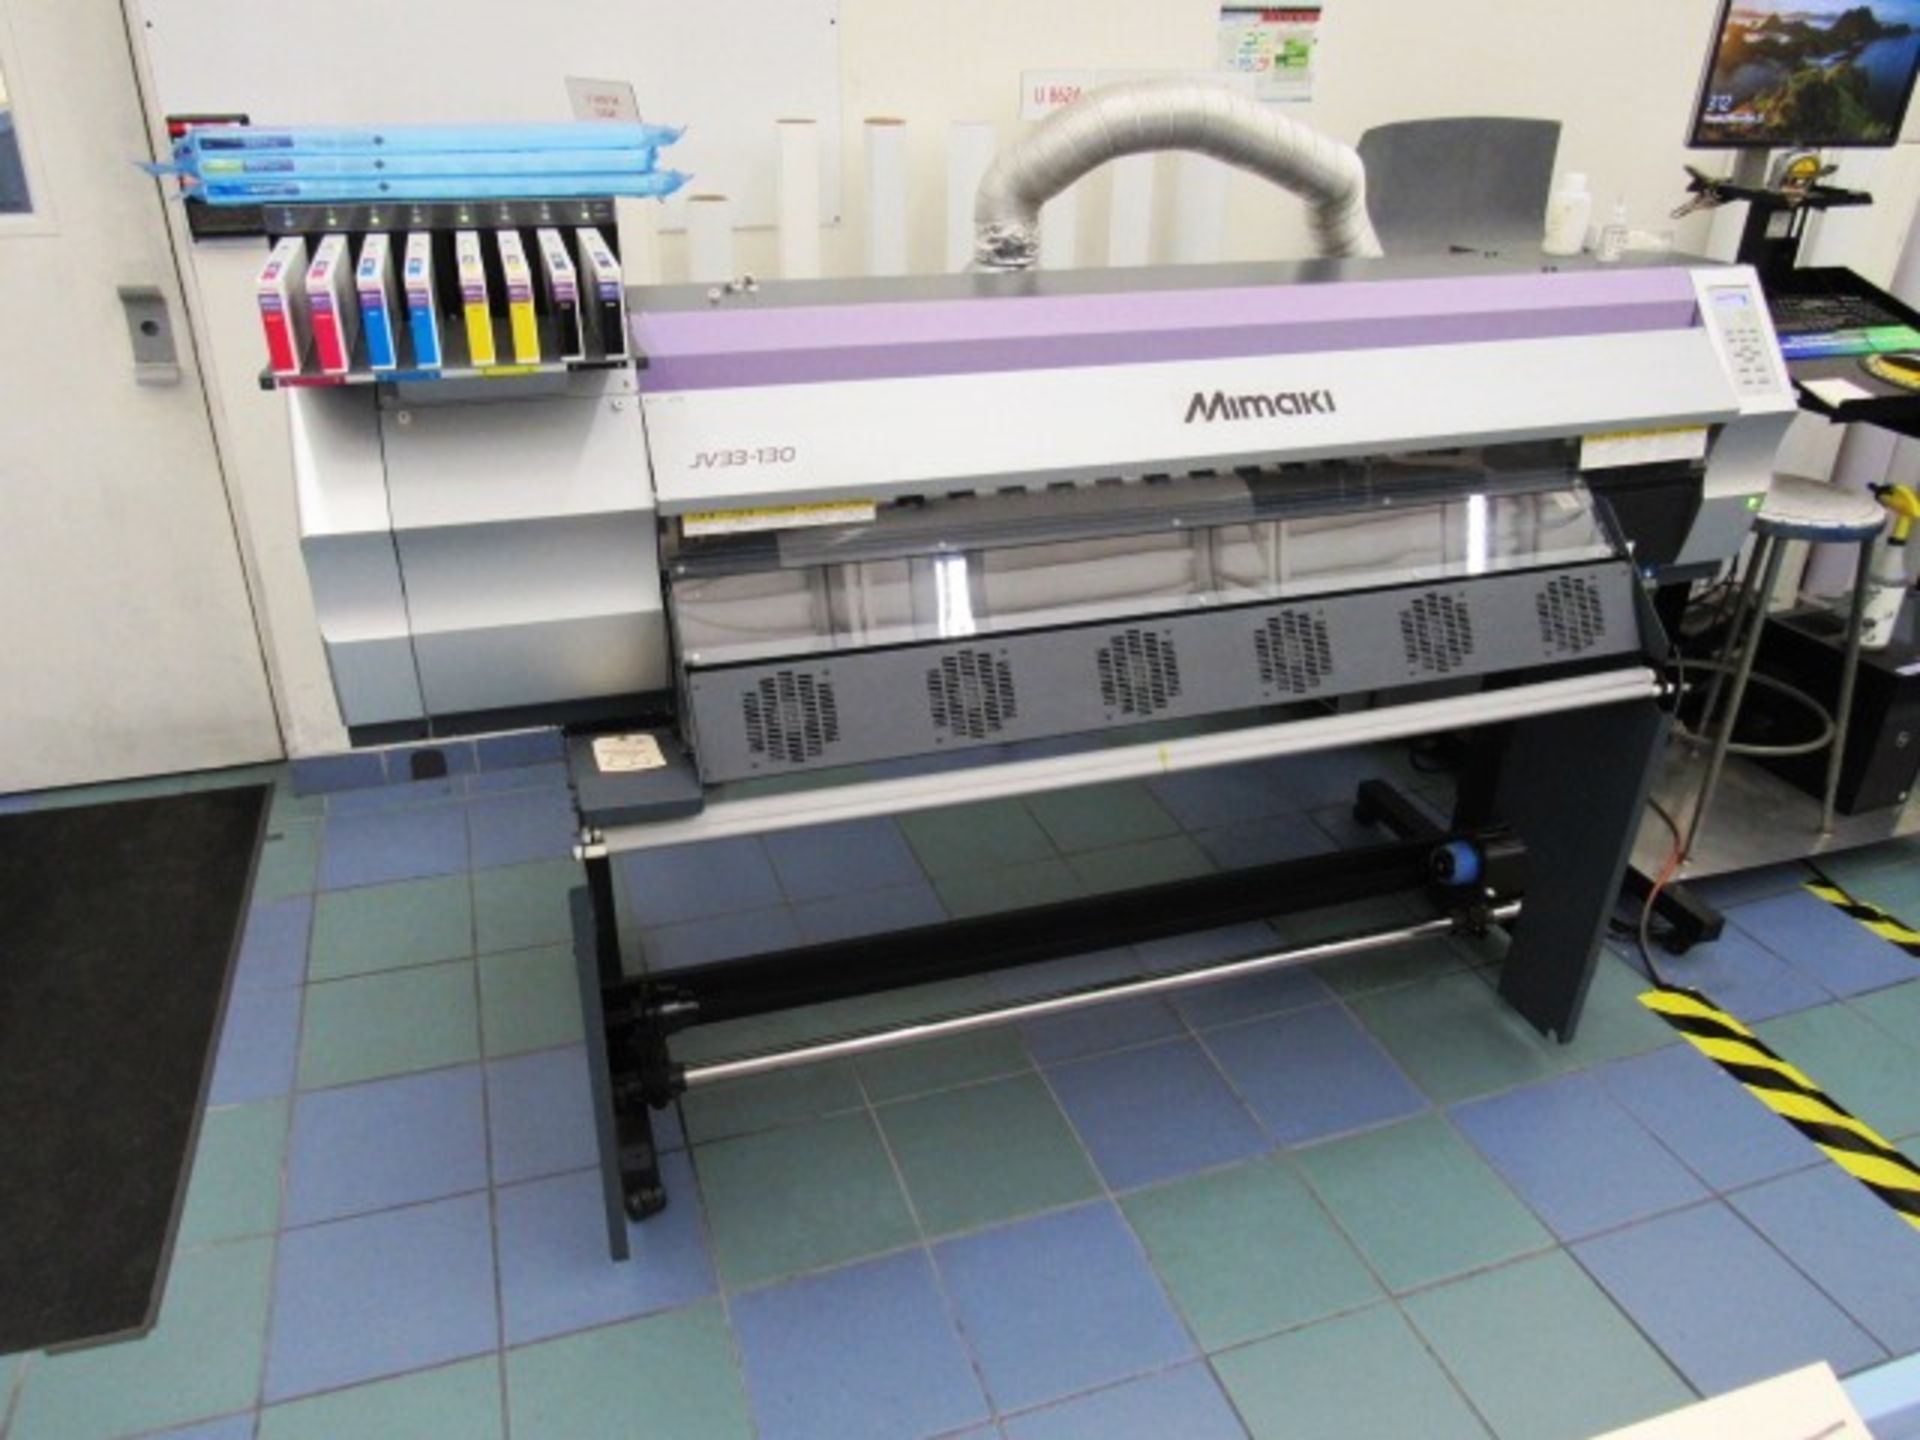 Mimaki JV-33-130 Full Color Printer